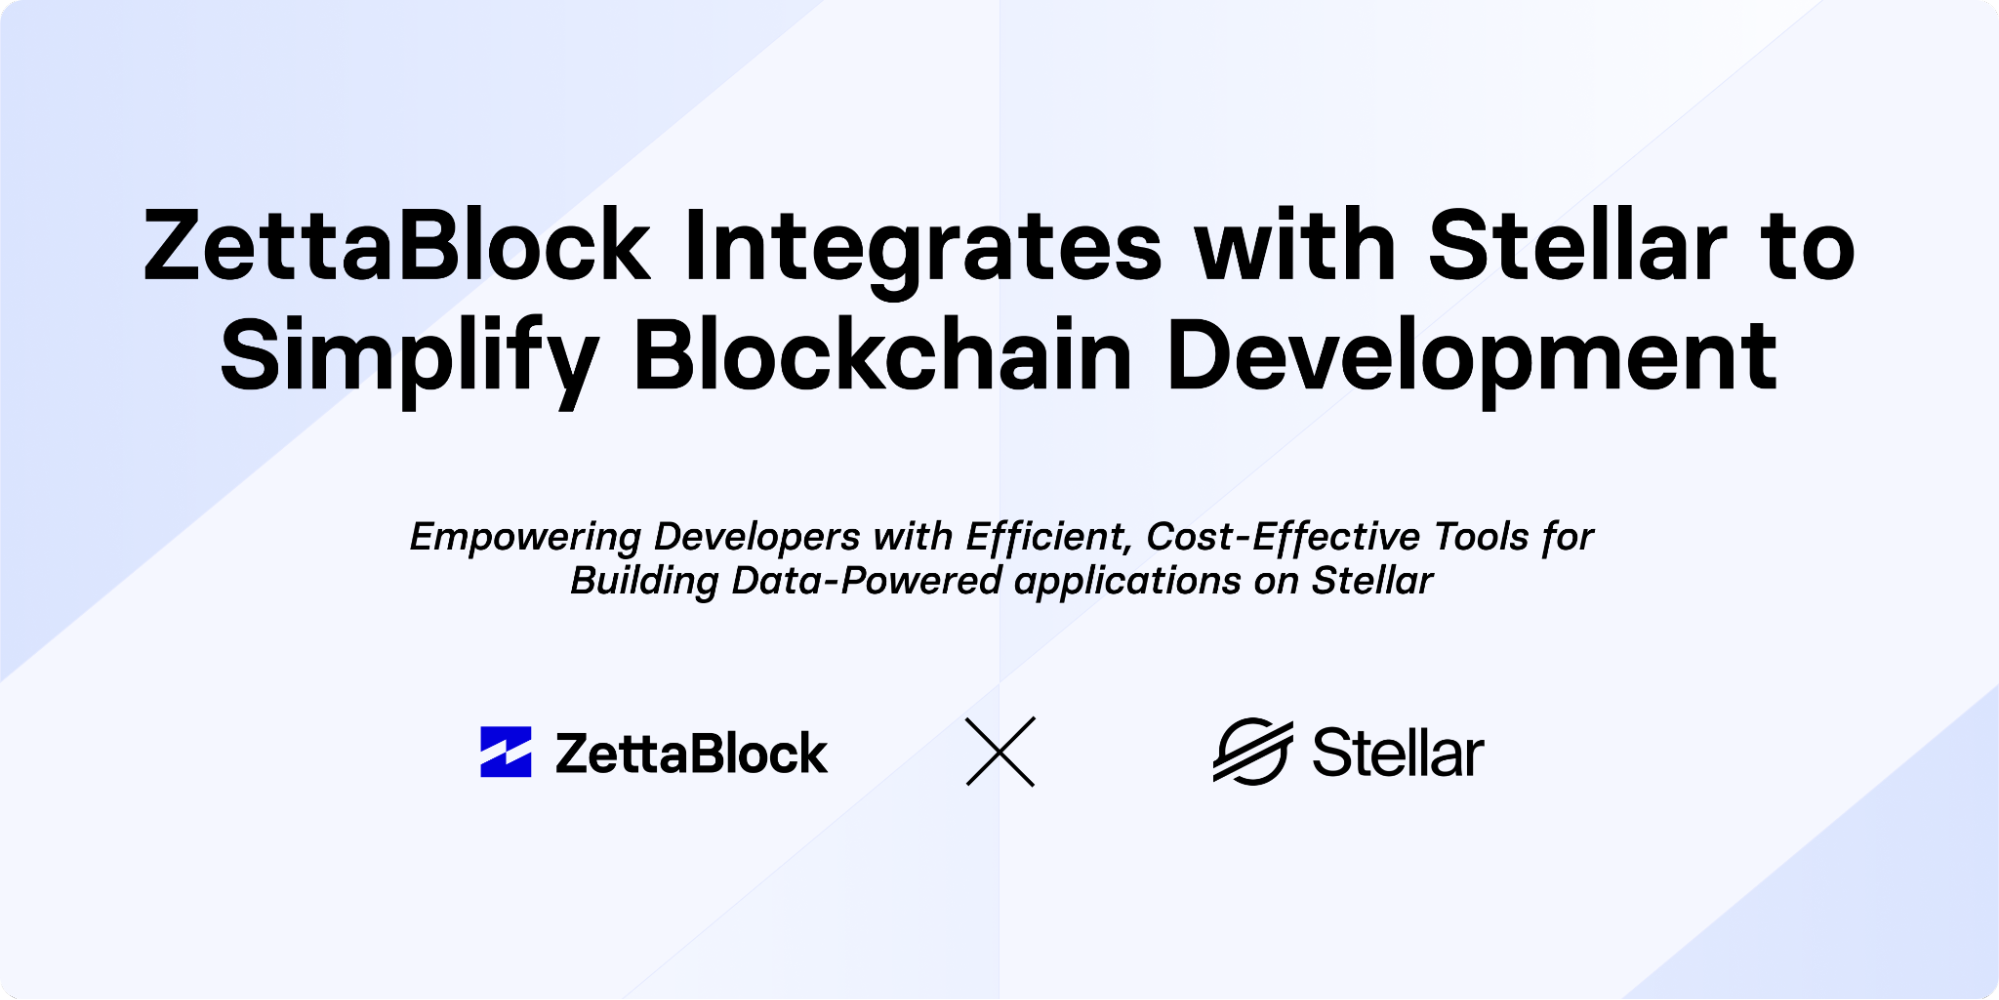 , ZettaBlock Integrates with Stellar to Simplify Blockchain Development